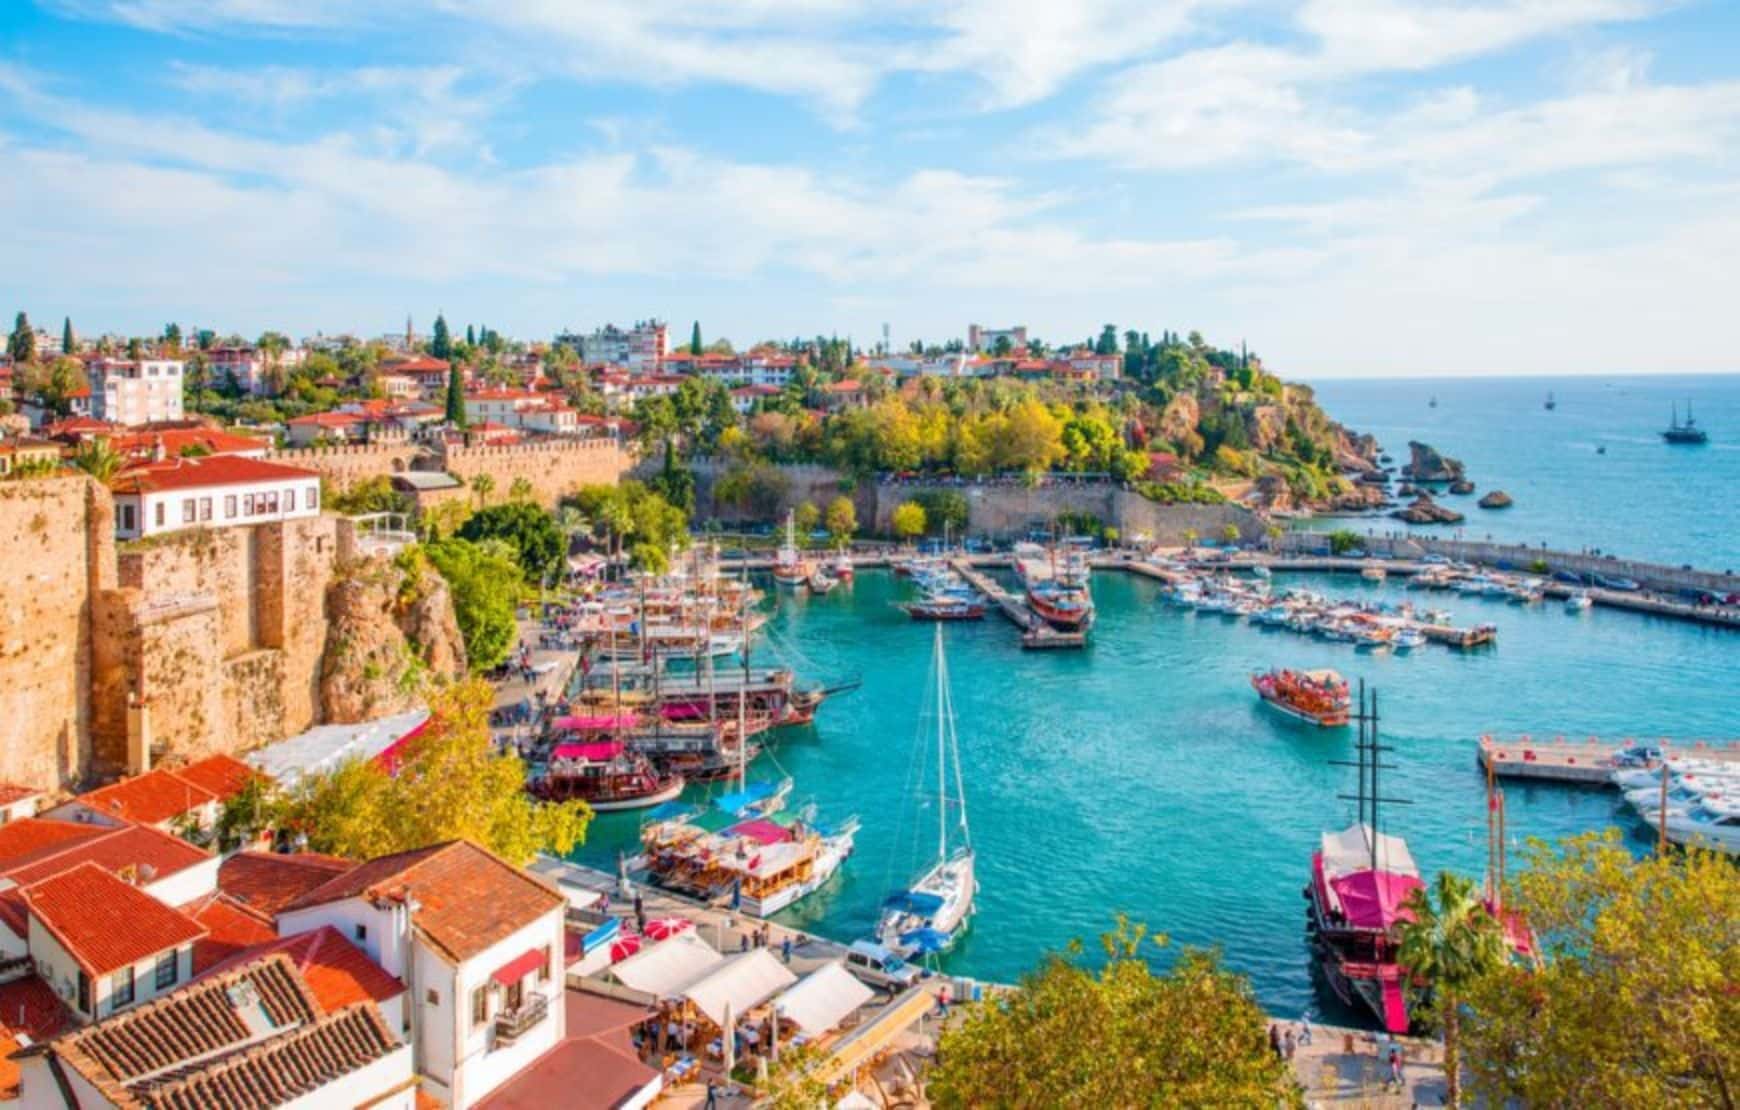 Kaleici Port in Antalya